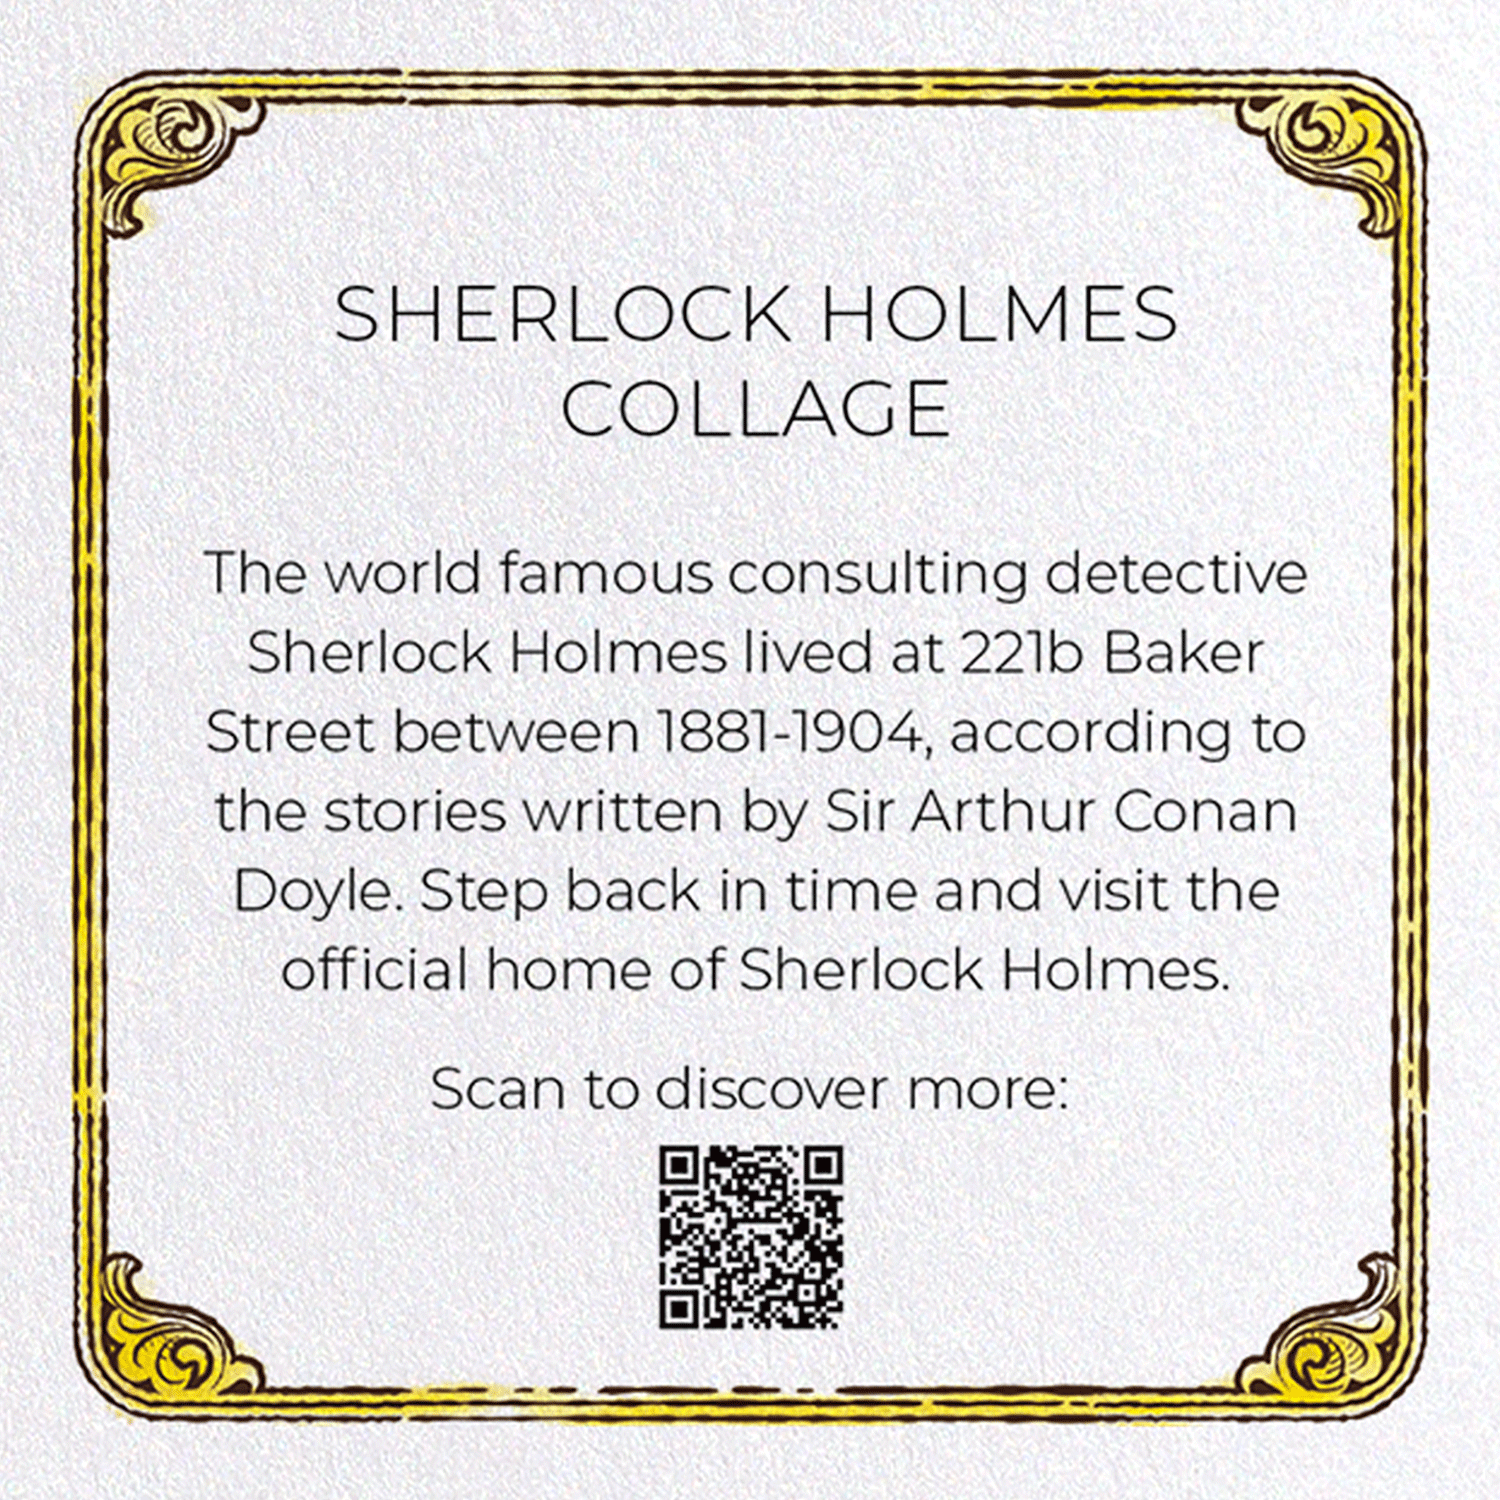 SHERLOCK HOLMES COLLAGE: Bespoke Greeting Card